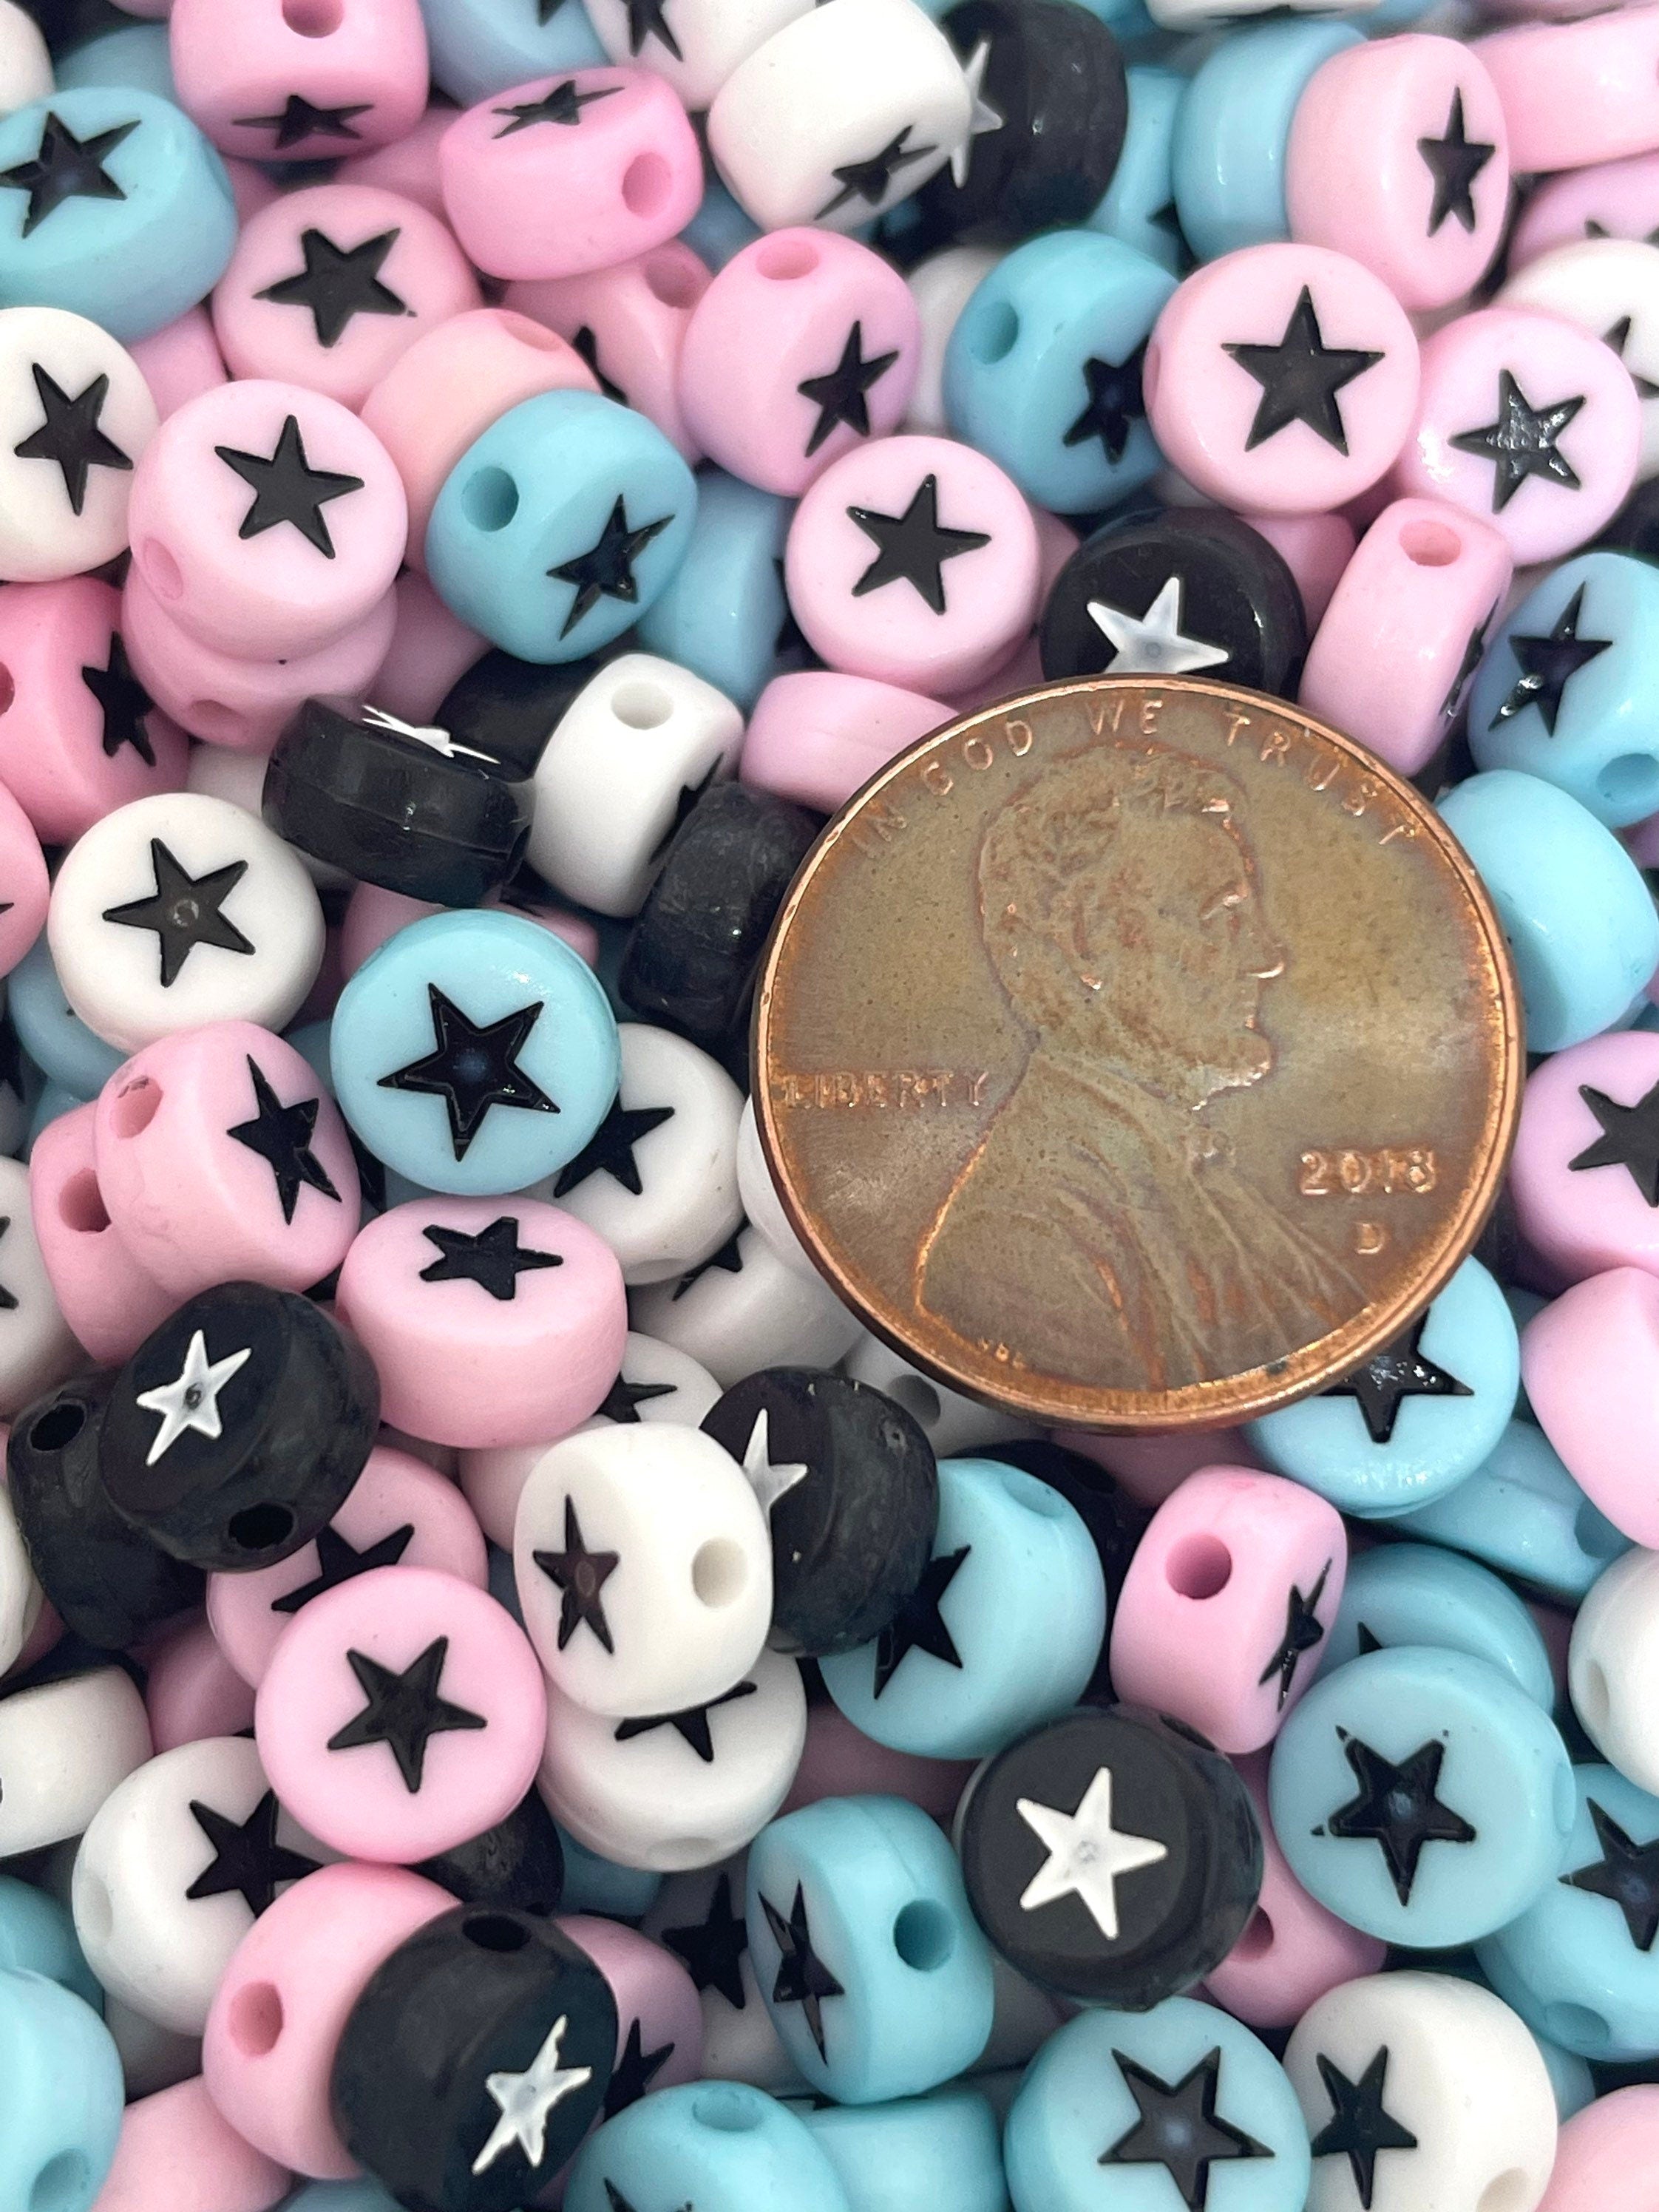 Cutie Star Coin Bead Assortment, 7mm Beads, Spacers for Alphabet Beads, Spacers for Letter Beads, Star Beads, Kawaii Beads, Unique Beads